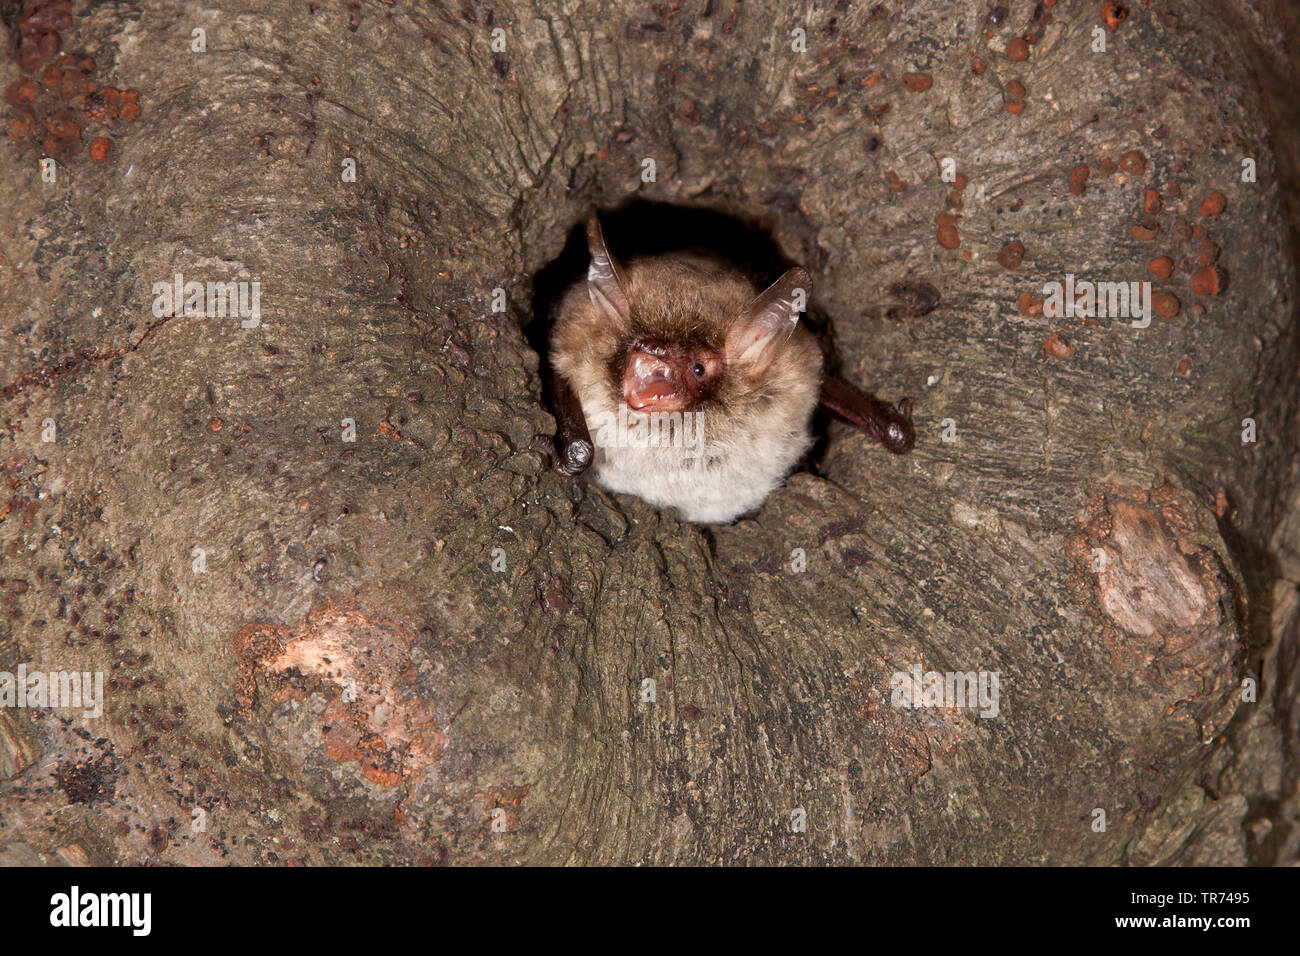 Natterer's bat (Myotis nattereri), leaving tree hole, Netherlands Stock Photo